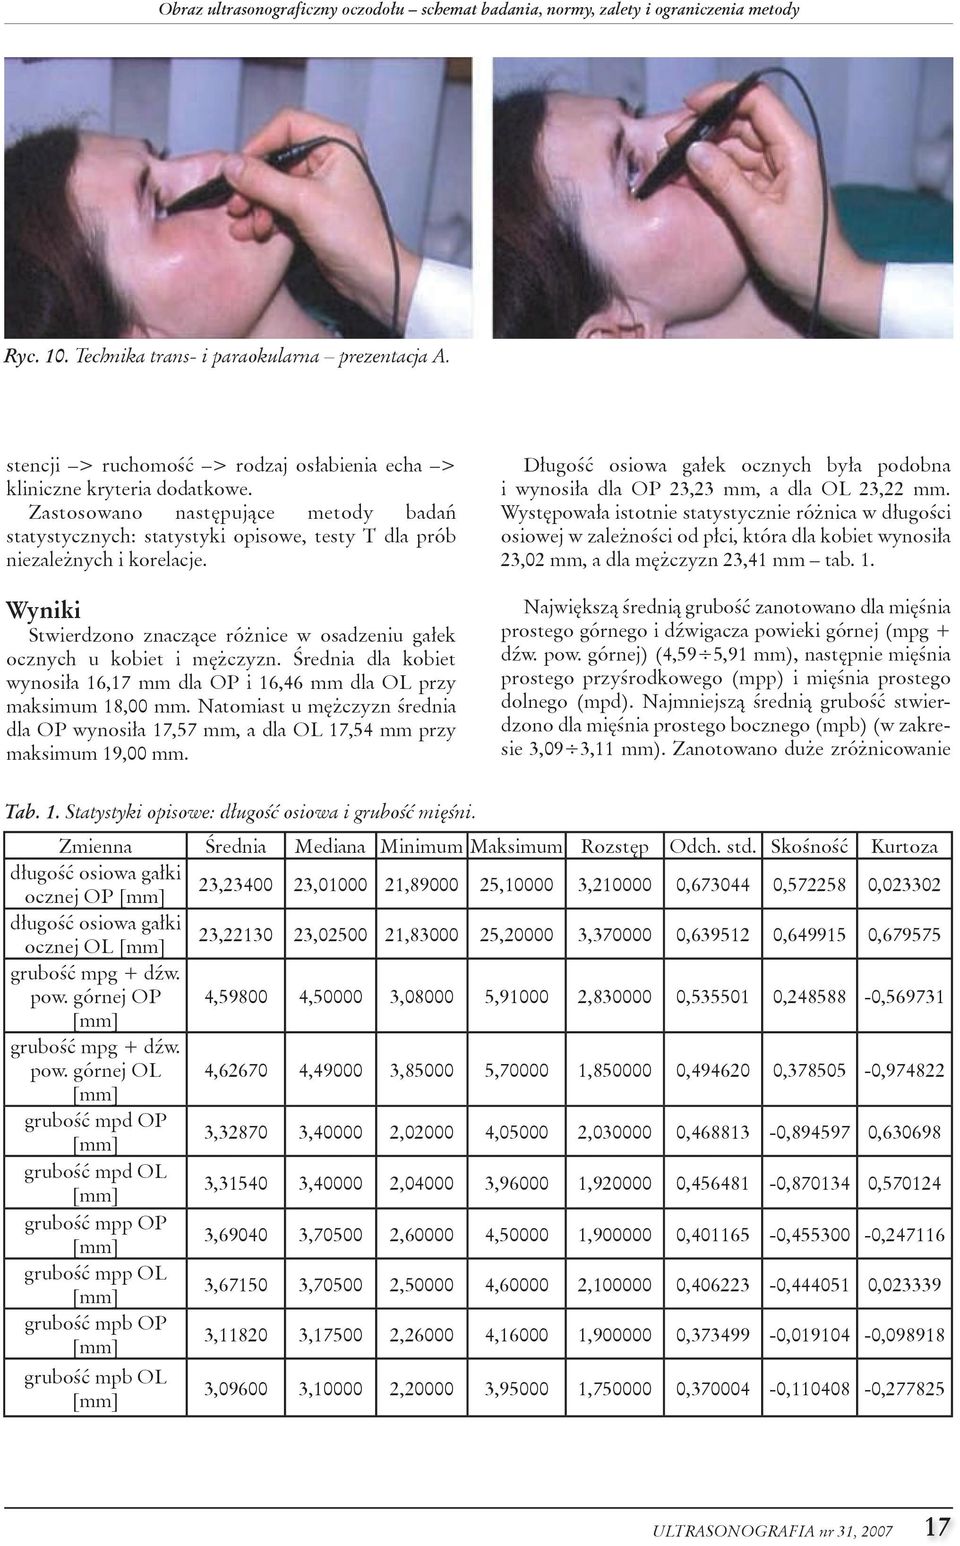 Wyniki stwierdzono znaczące różnice w osadzeniu gałek ocznych u kobiet i mężczyzn. Średnia dla kobiet wynosiła 16,17 mm dla op i 16,46 mm dla ol przy maksimum 18,00 mm.